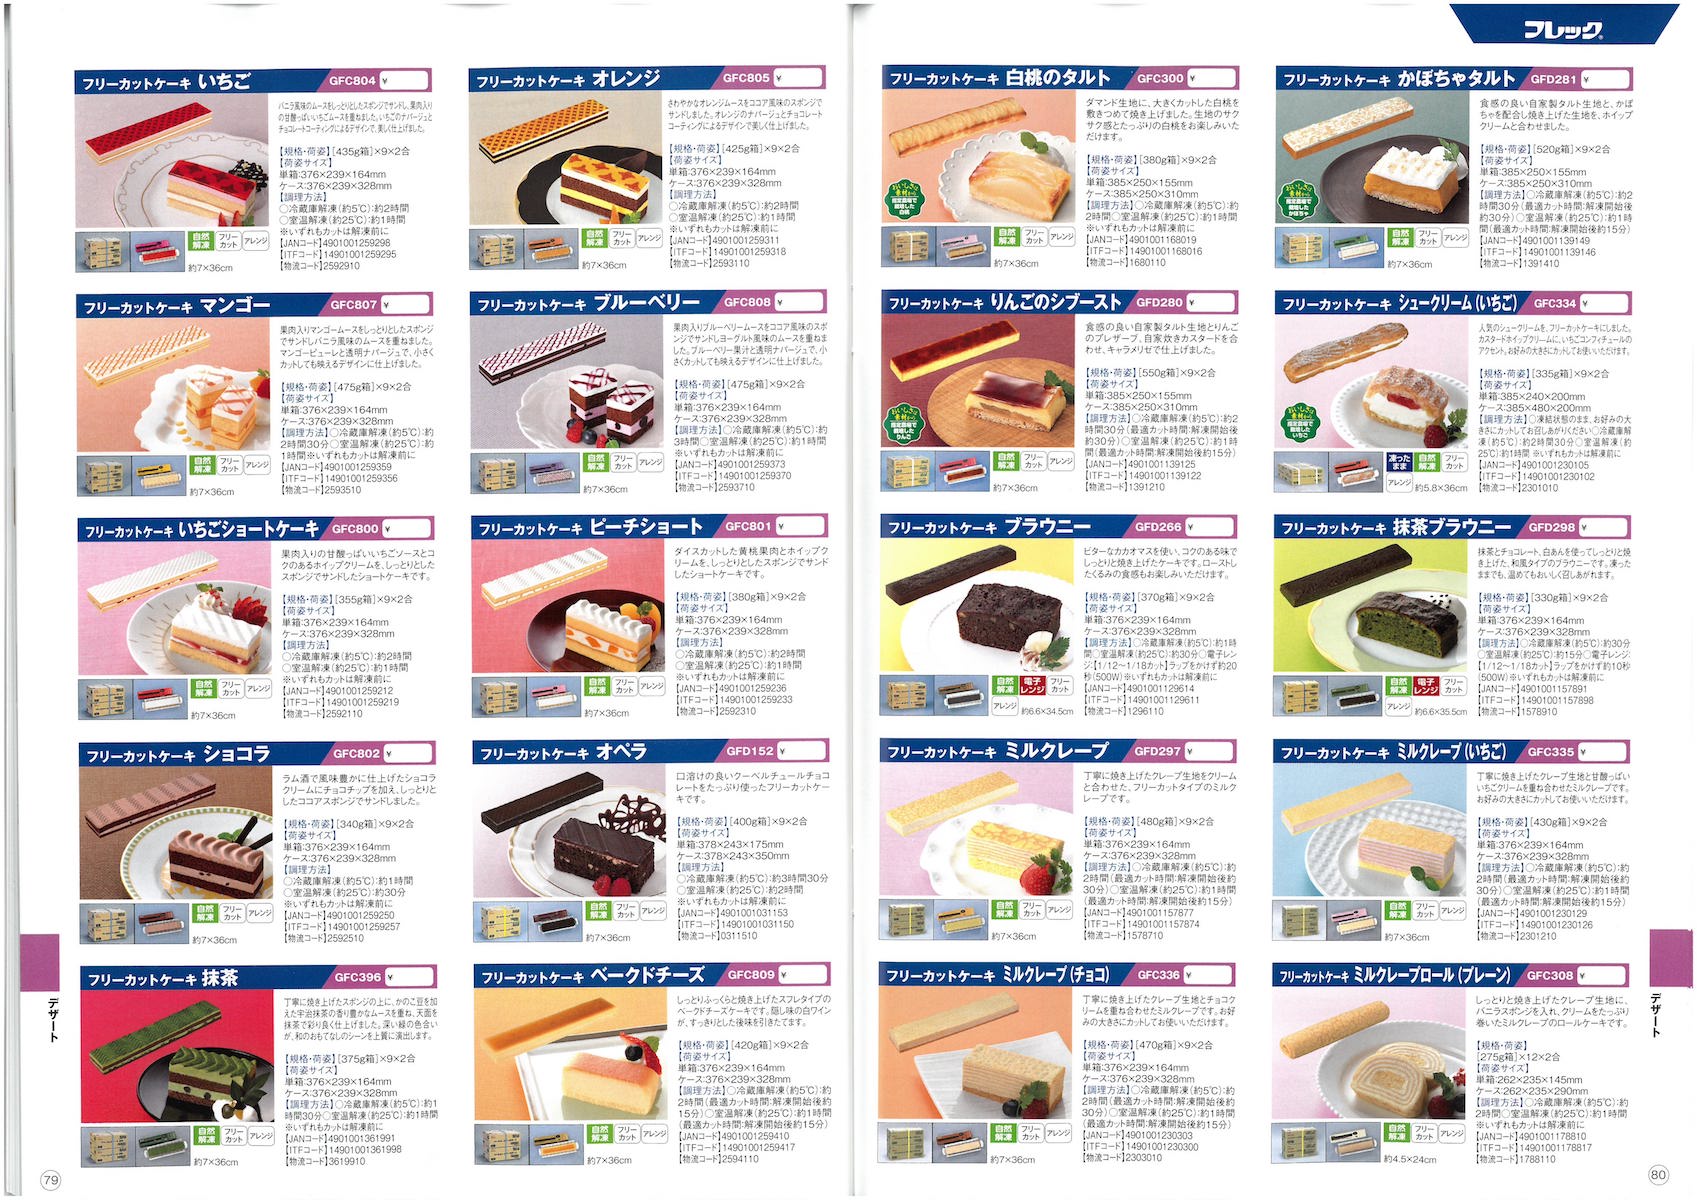 味の素冷凍食品18総合 General Catalog 味の素冷凍食品 業務用総合カタログ 冷凍食品カタログ Com